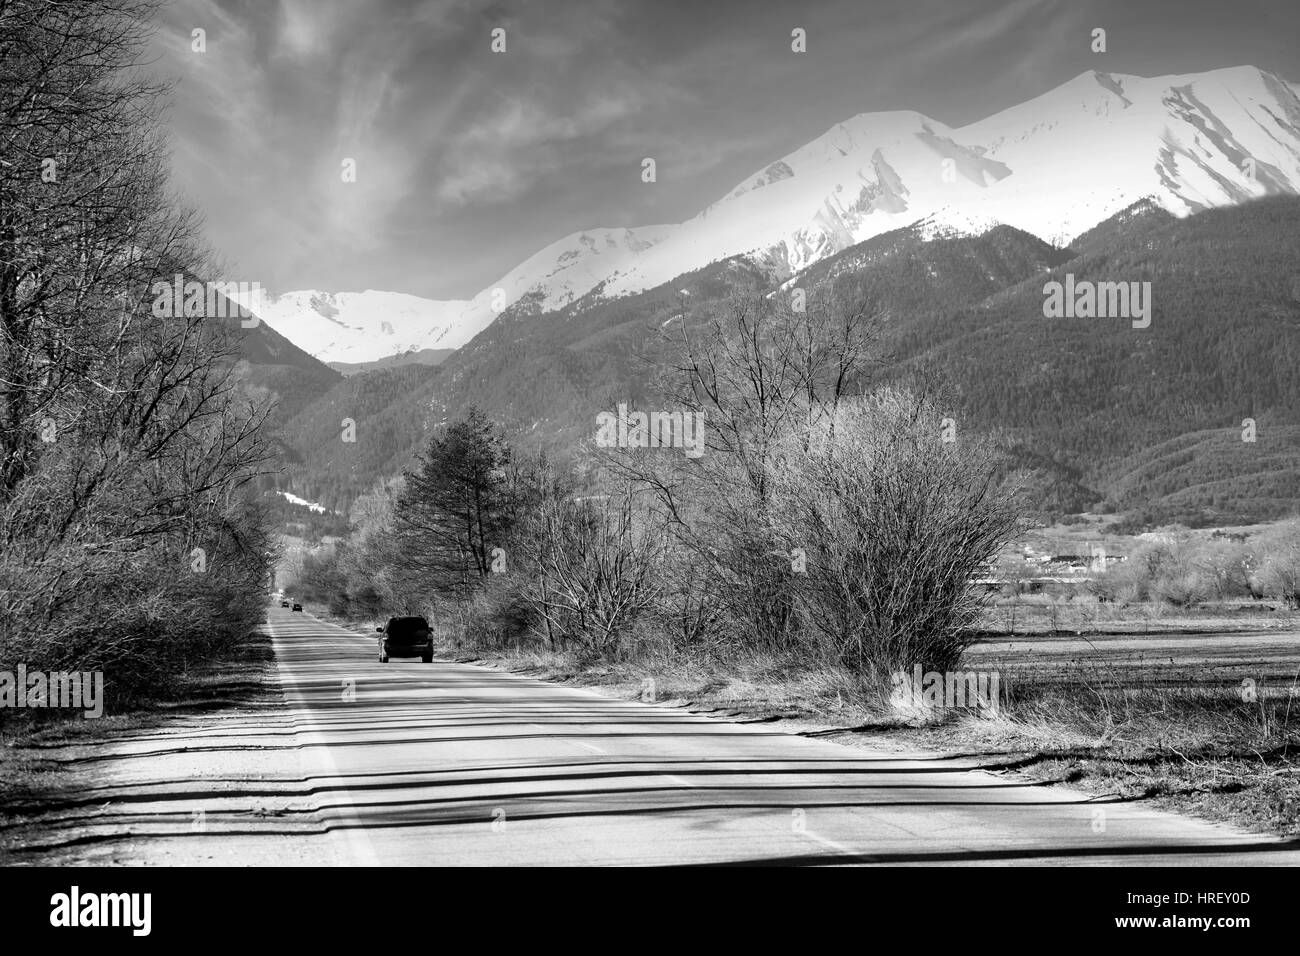 Route de montagne en noir et blanc et pics couverts de neige, dans la station de ski de Bansko Pirin Bulgarie Banque D'Images